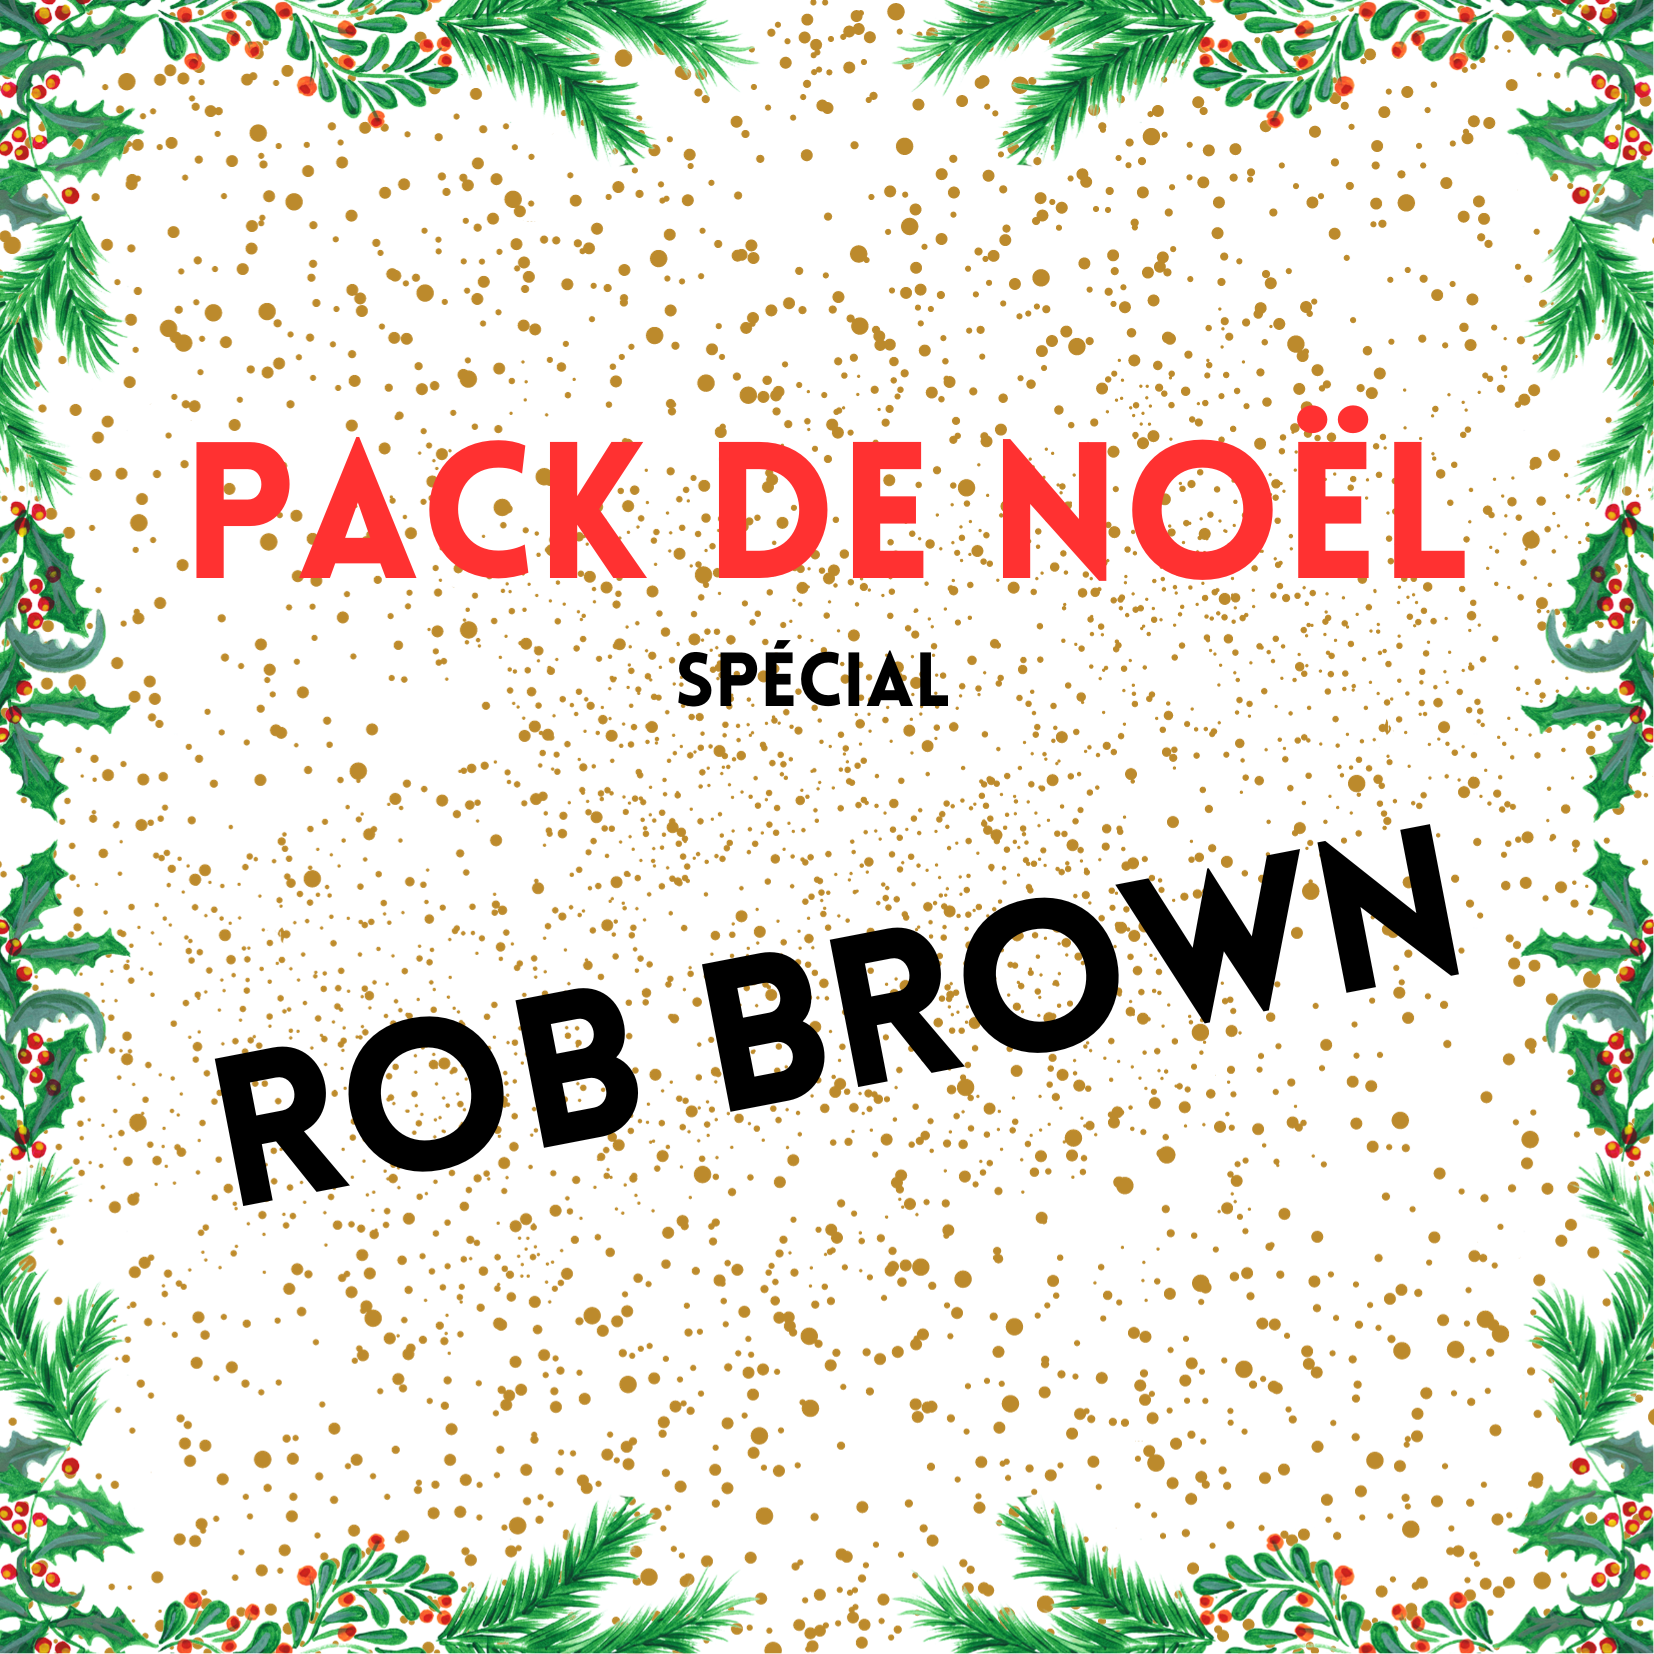 PACK DE NOËL - ROB BROWN